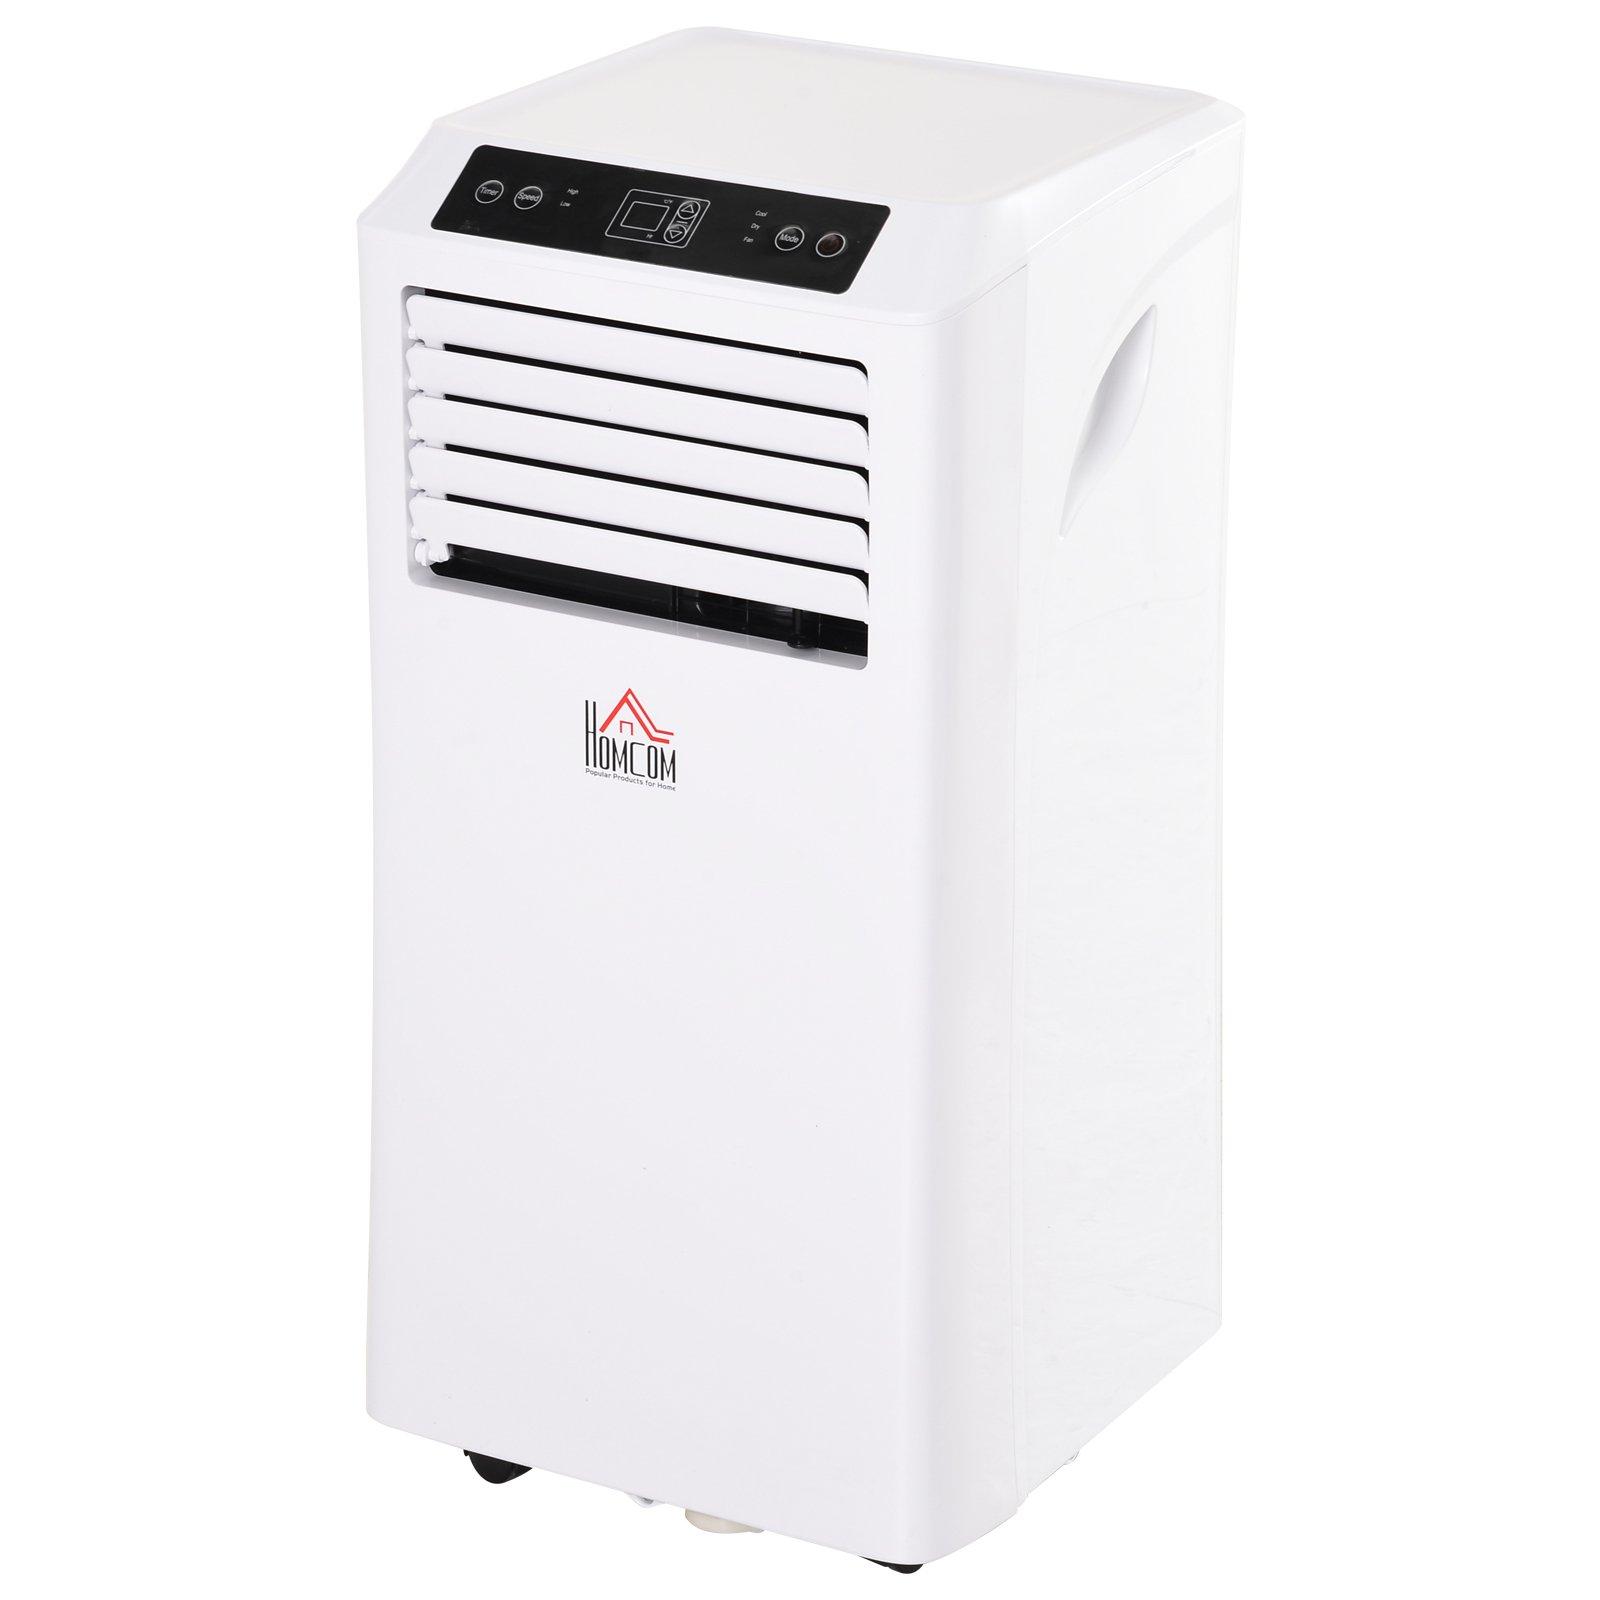 Homcom 1003W Mobile Air Conditioner, white